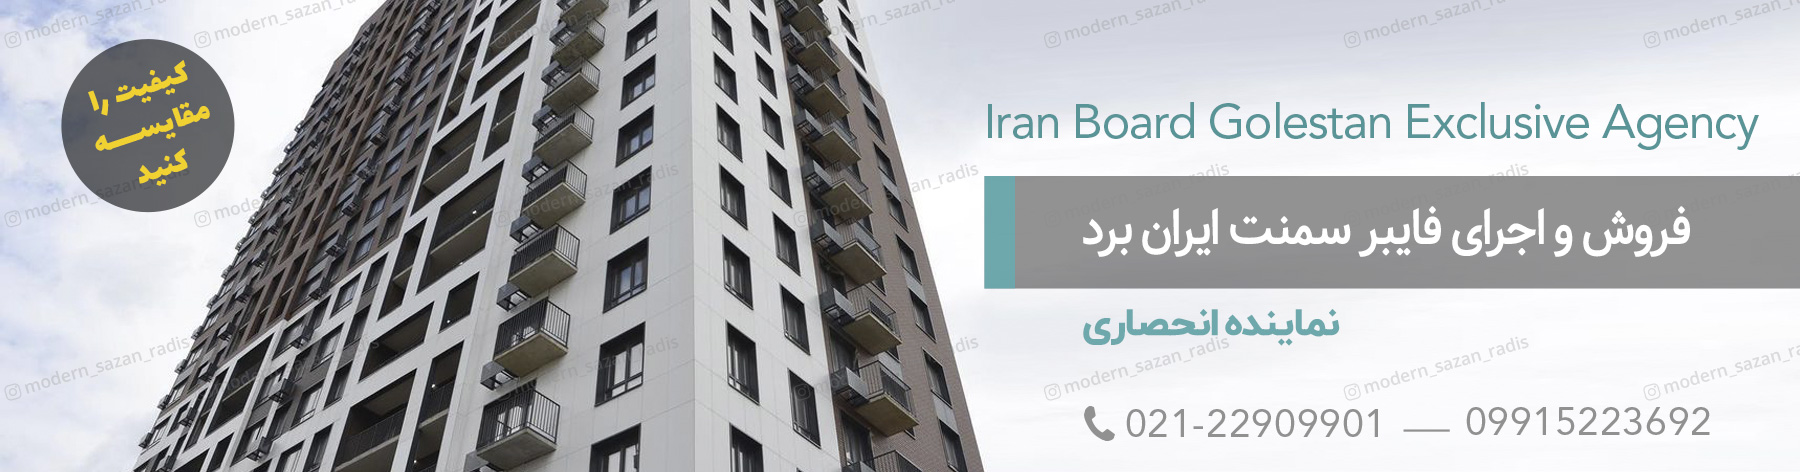 فایبرسمنت ایران برد اولین فایبر سمنت برد بدون گچ در ایران